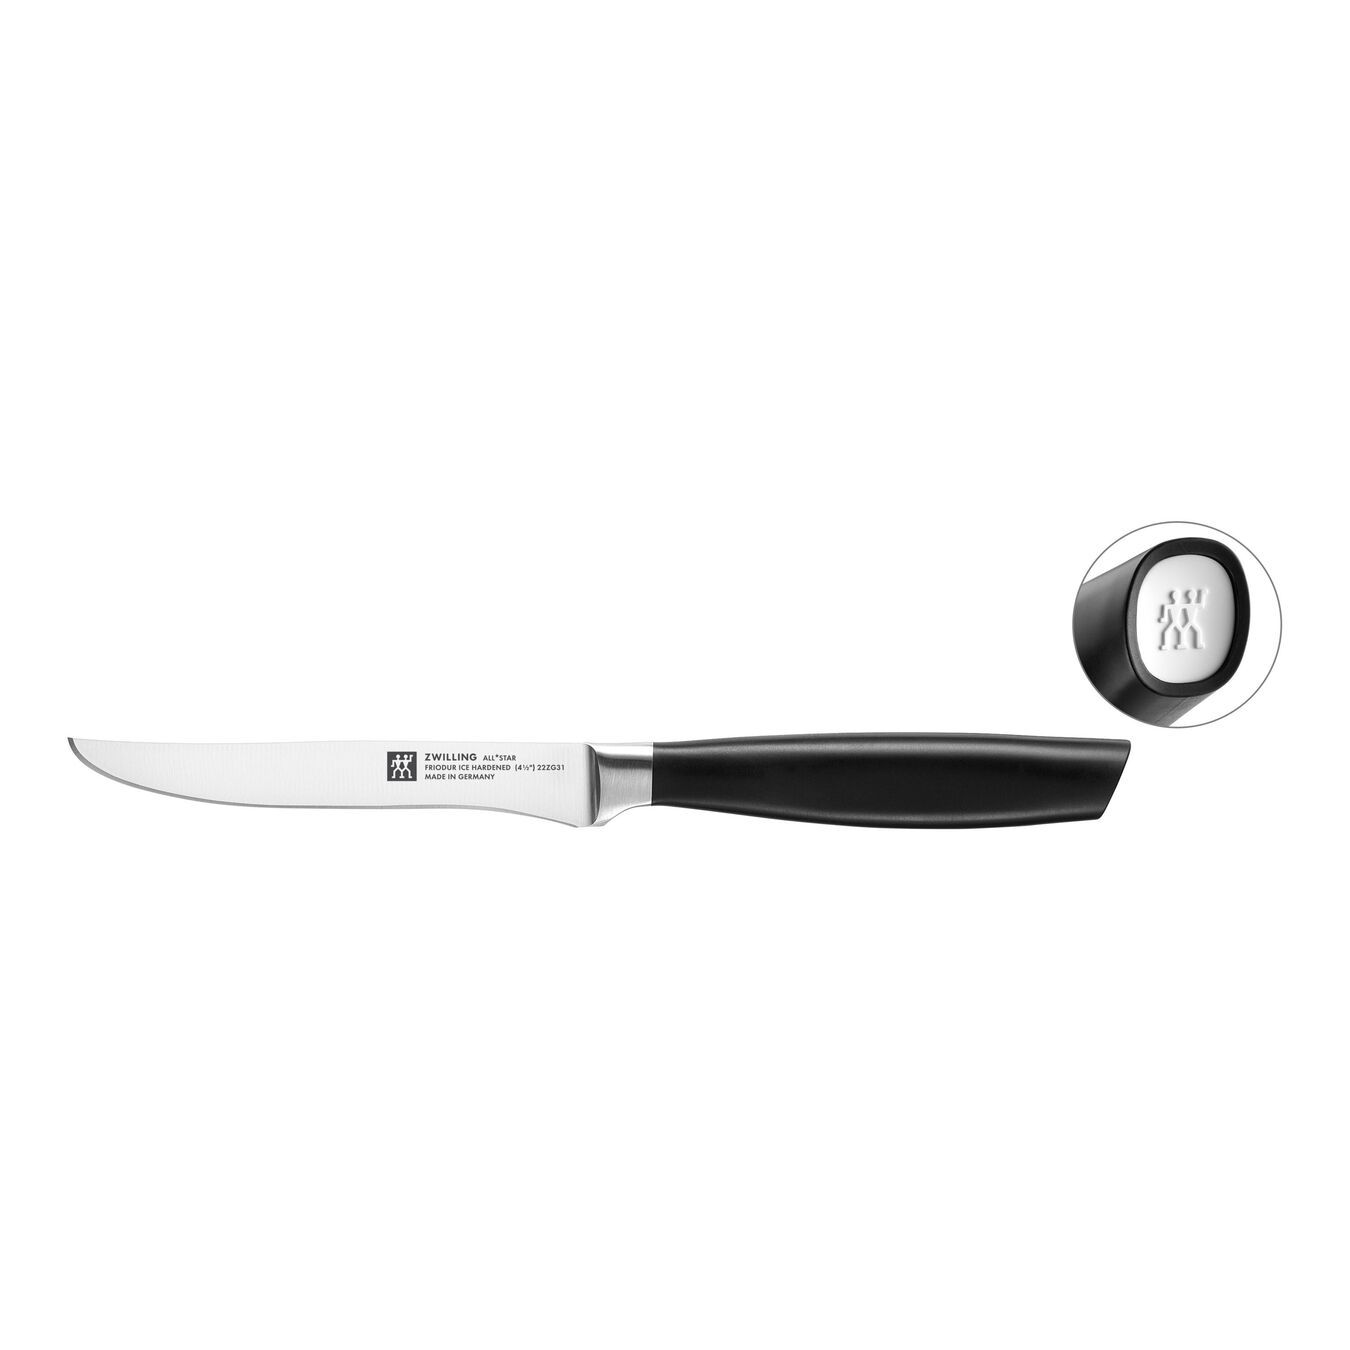 Grill kniv 12 cm, Vit,,large 1